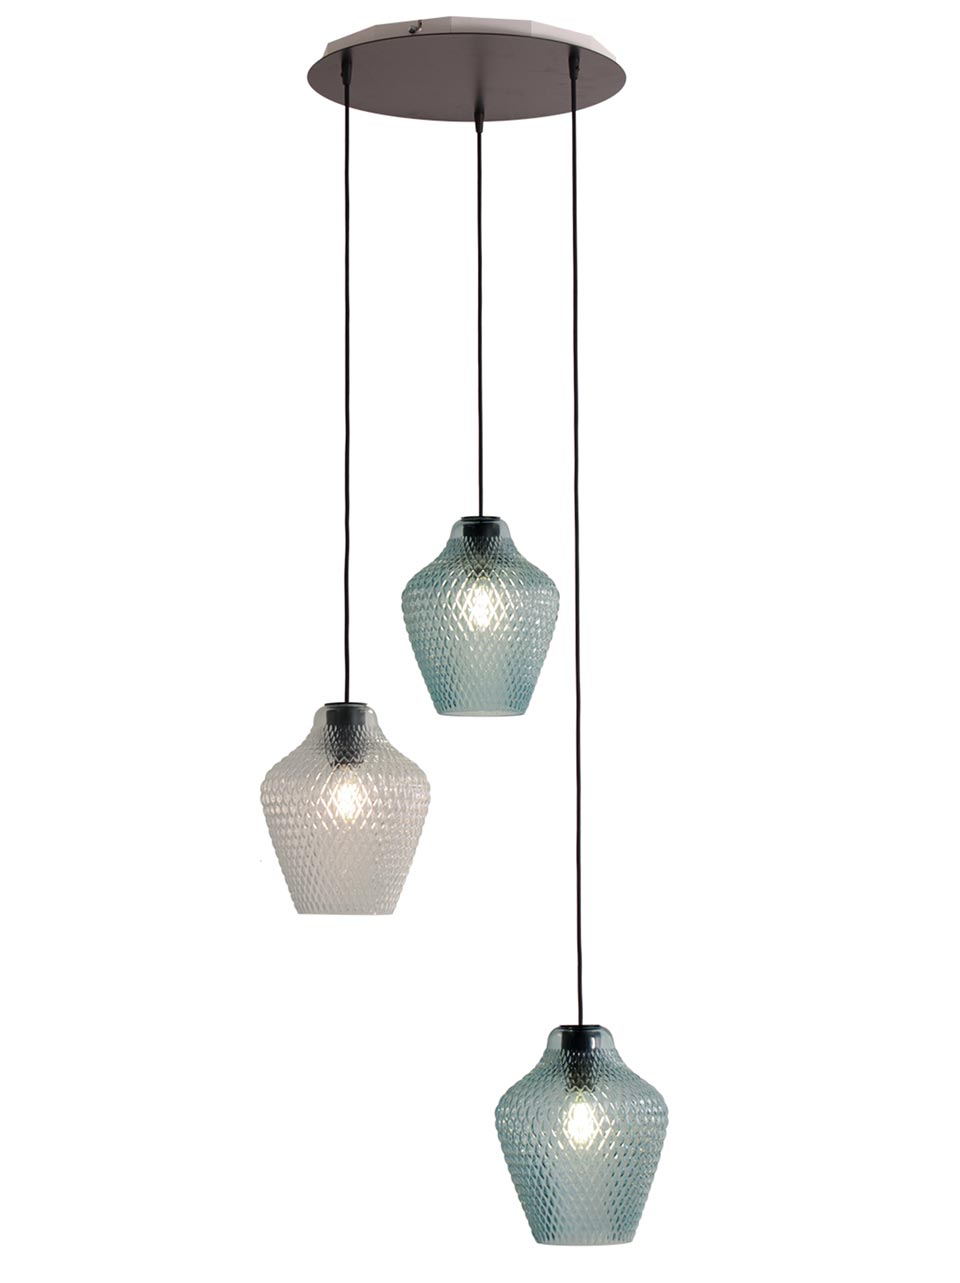 Api suspension trois lumières en verre turquoise et transparent. Concept Verre. 